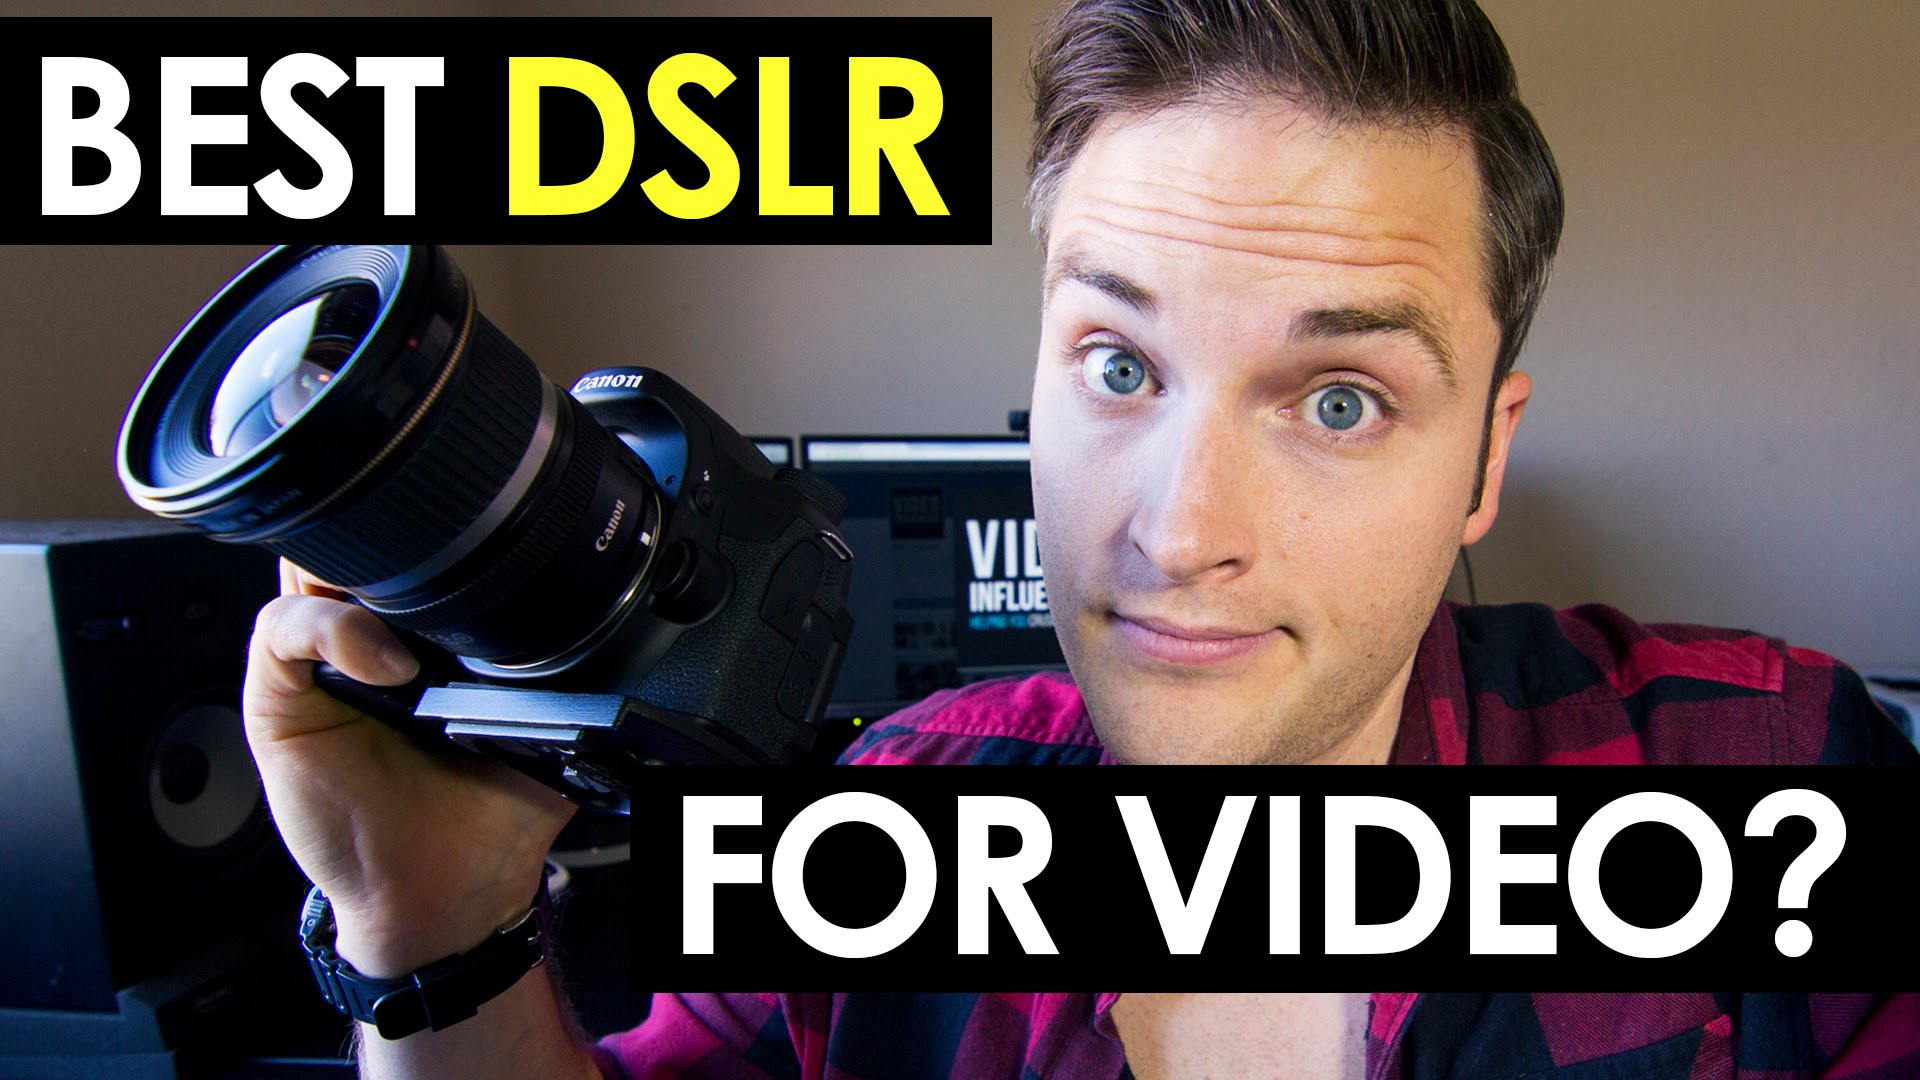 Best DSLR For Video?